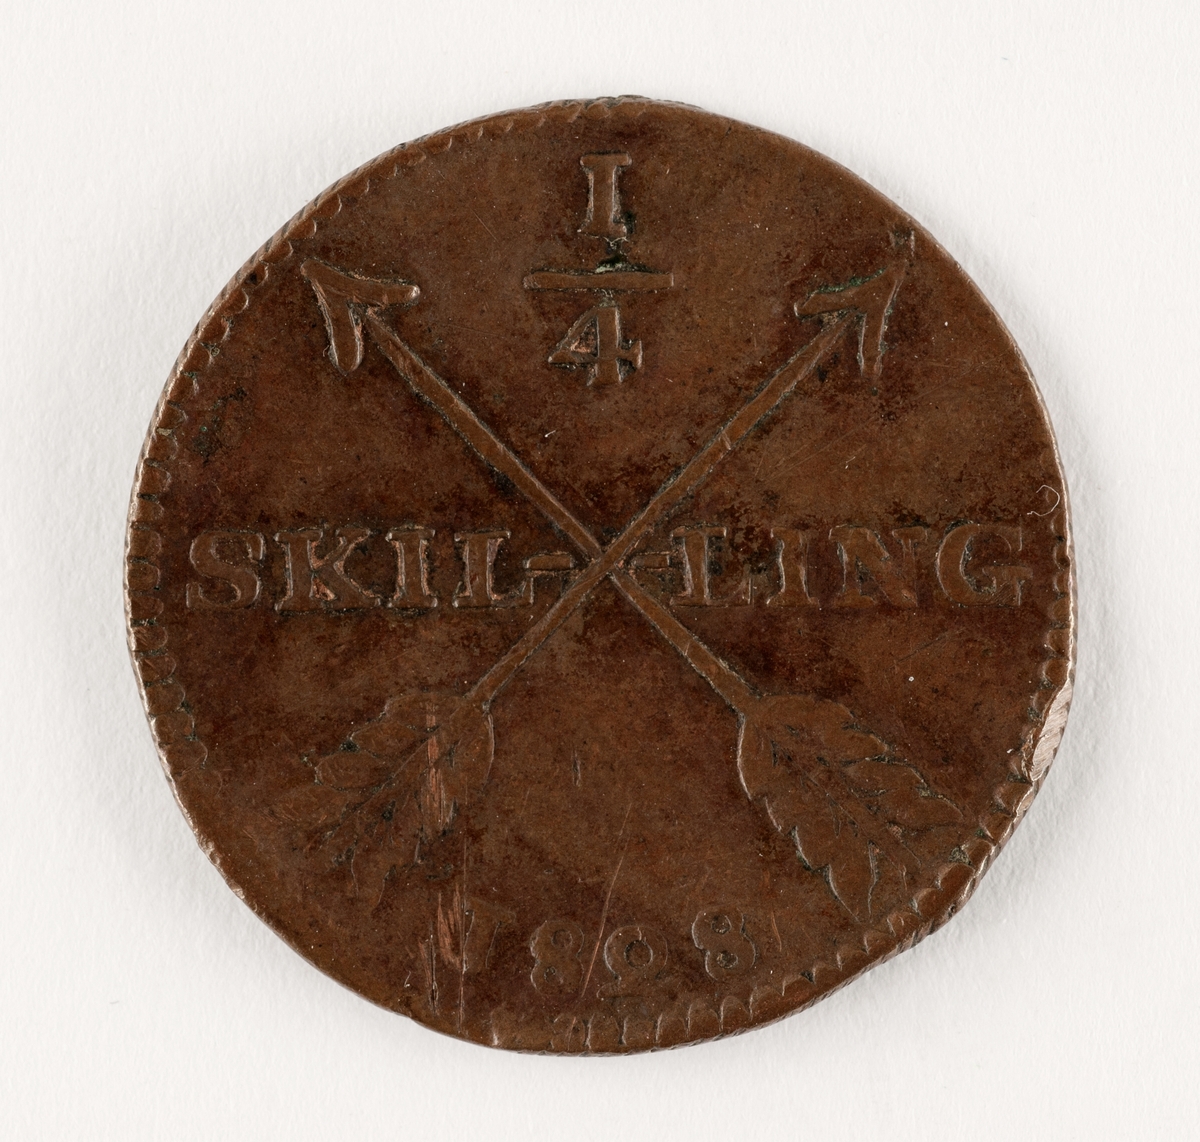 Mynt, SVeriges, Karl XIV John (1818-1844), Avesta, 1/4 skilling 1828, koppar. På aversen två korsade pilar, på reversen kungens namnskiffer och valspråk.

 
